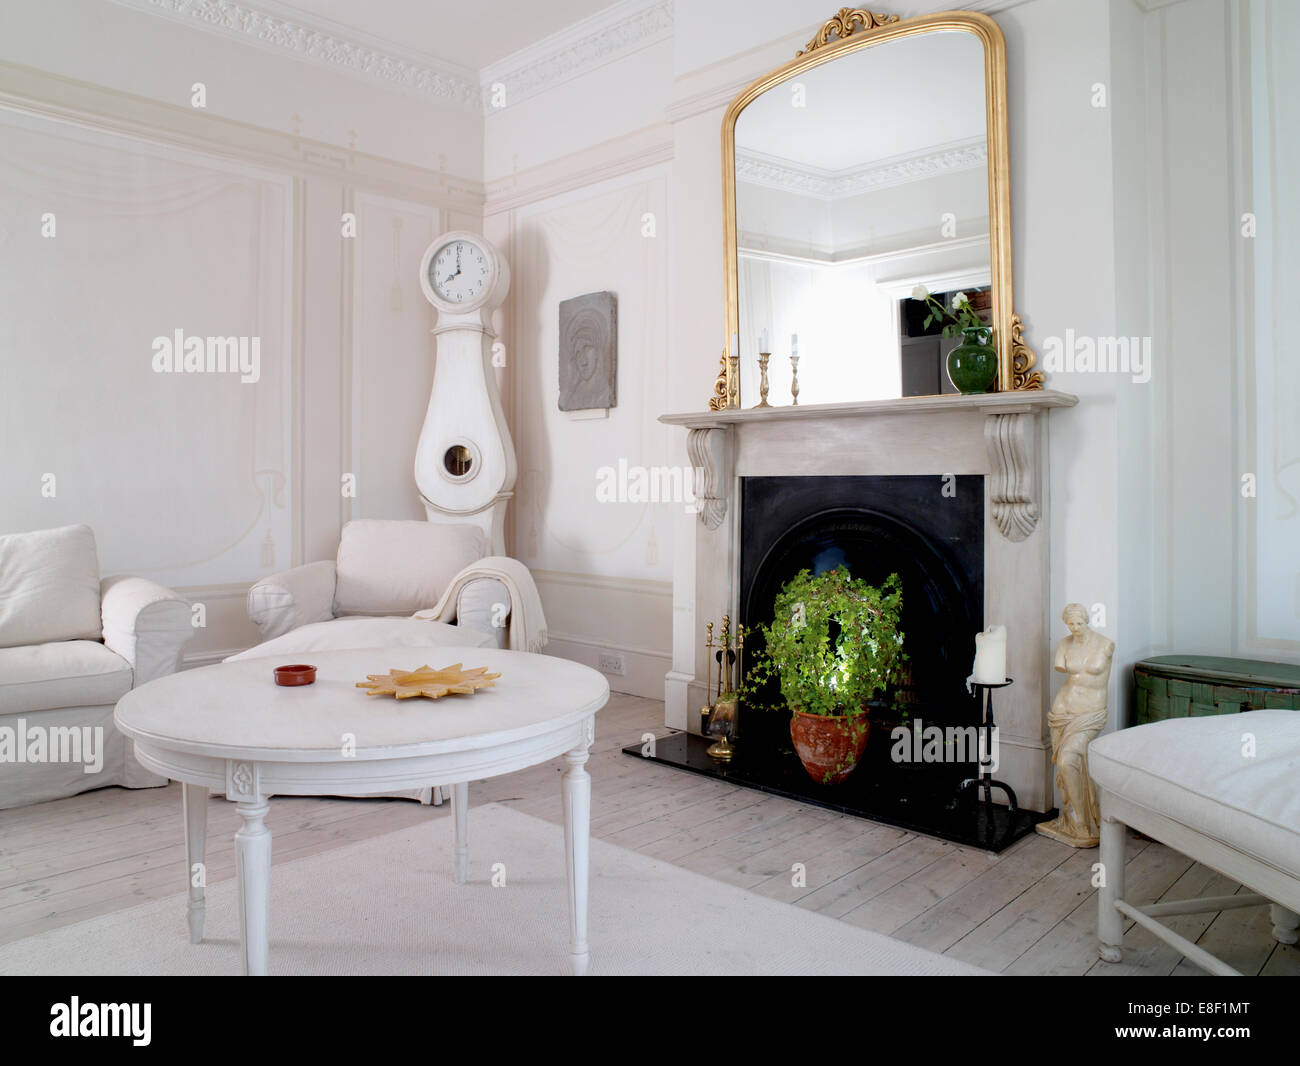 Table basse laqué blanc en face de la cheminée de marbre avec grand miroir doré dans un style suédois dans tous les salon blanc Banque D'Images